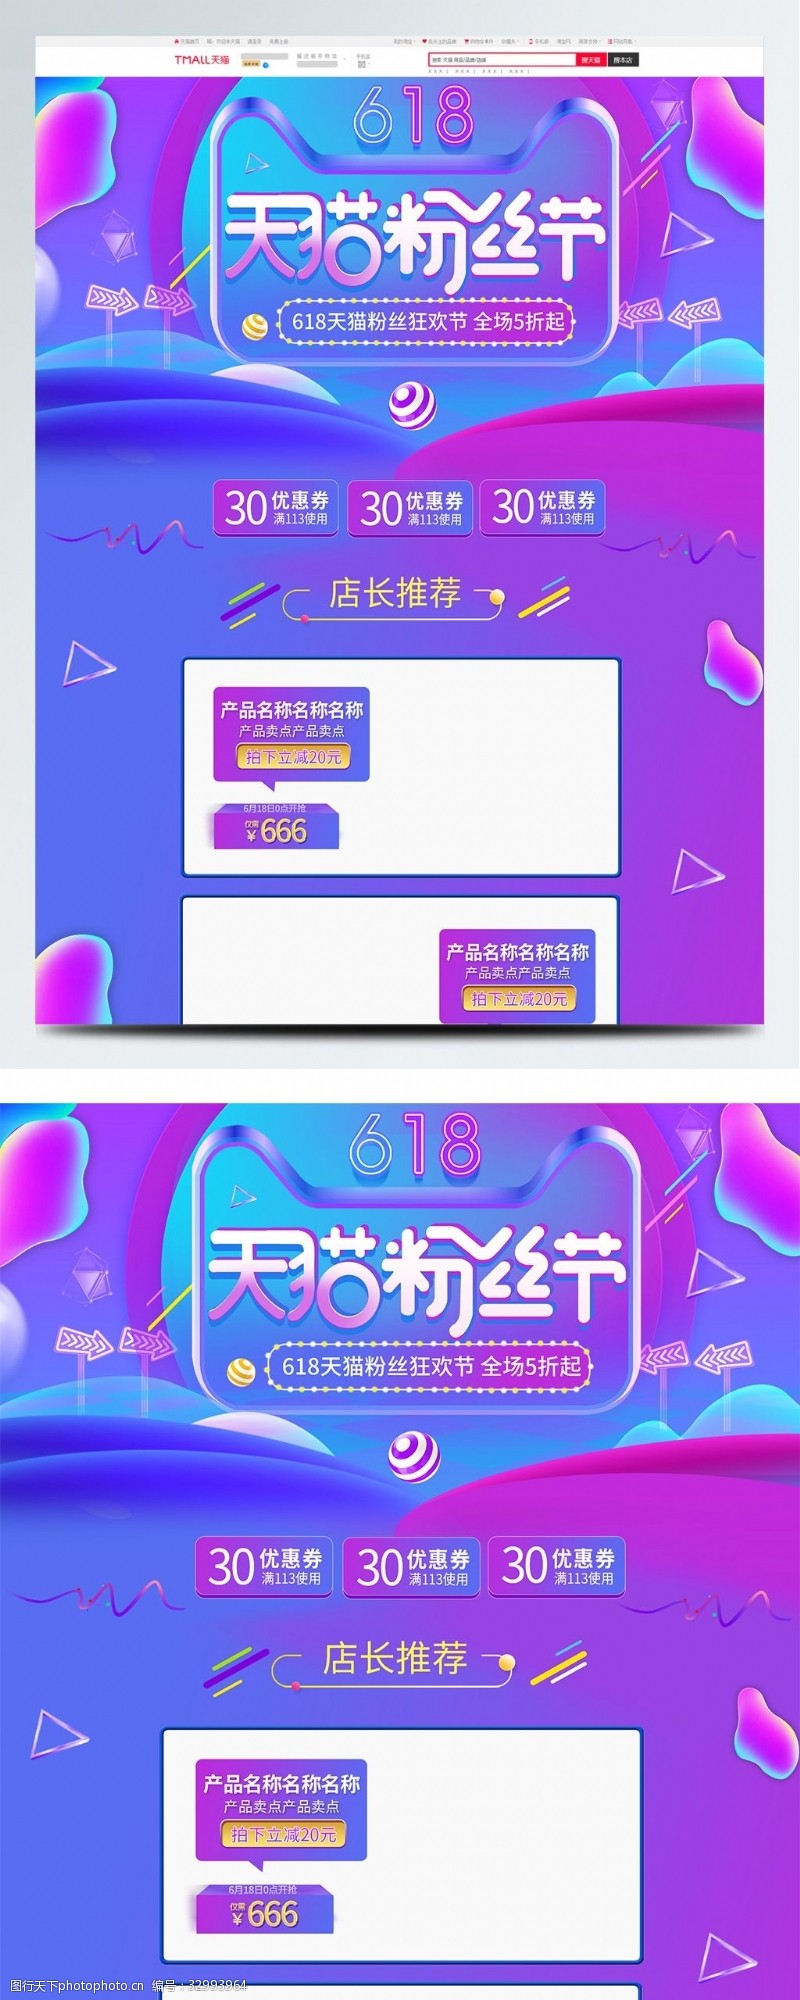 全场商品5折紫色微立体电商促销天猫粉丝节淘宝首页模板